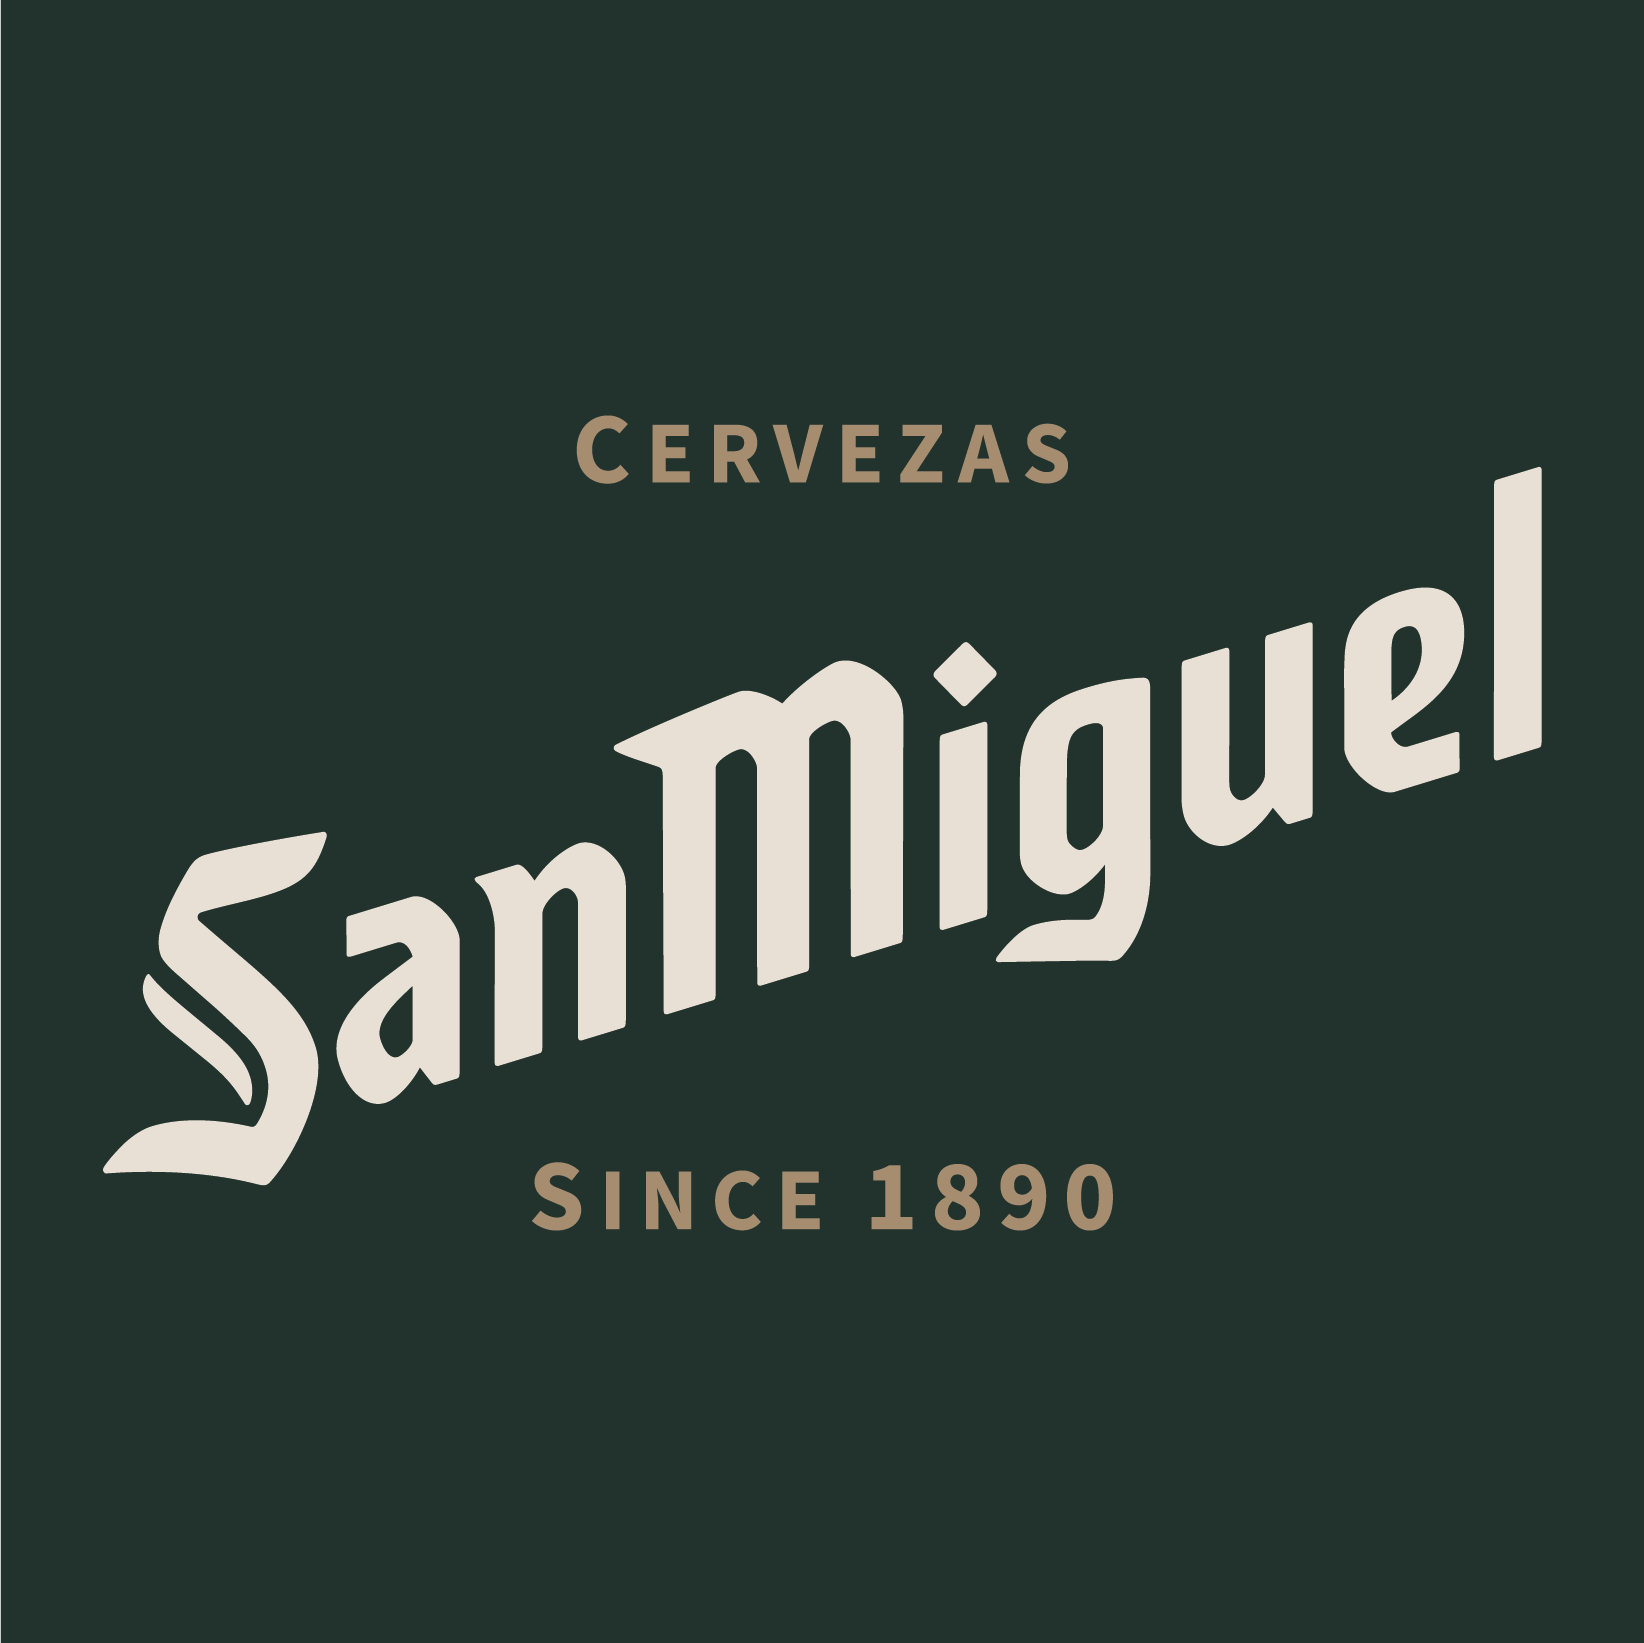 Cervezas San Miguel since 1890